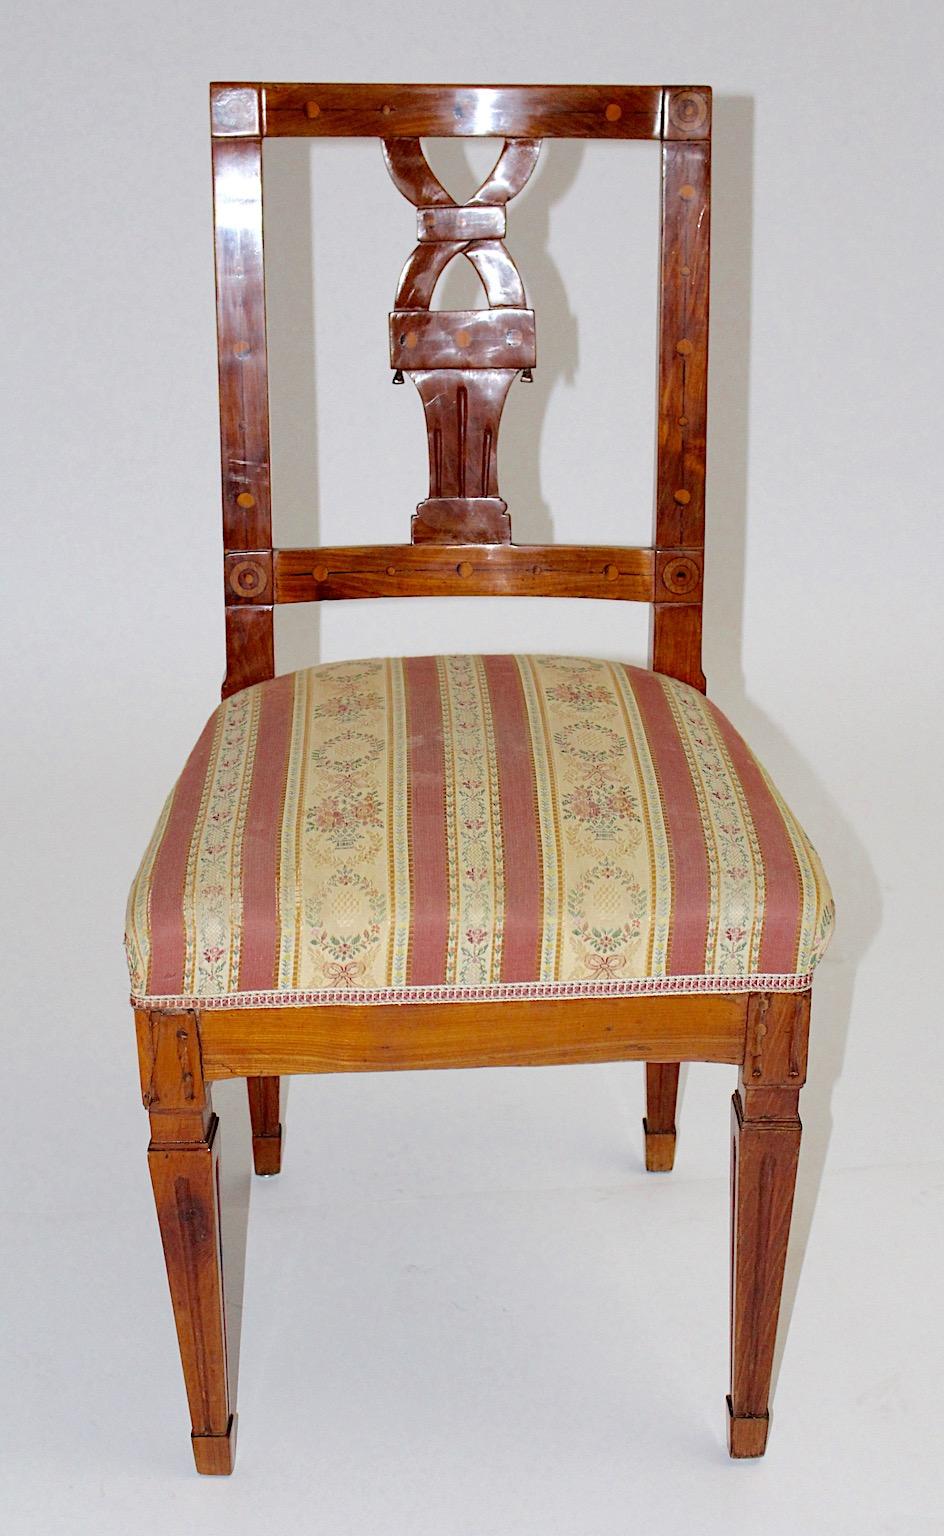 Esstischstuhl oder Beistellstuhl handgeschnitzt aus massivem Kirschholz mit Ahornintarsien um 1780, Österreich. 
Der Josephinische Stil war im 18. Jahrhundert in Österreich sehr beliebt.
Dieser Stil kennzeichnete das Ende des Habsburgerbarocks und